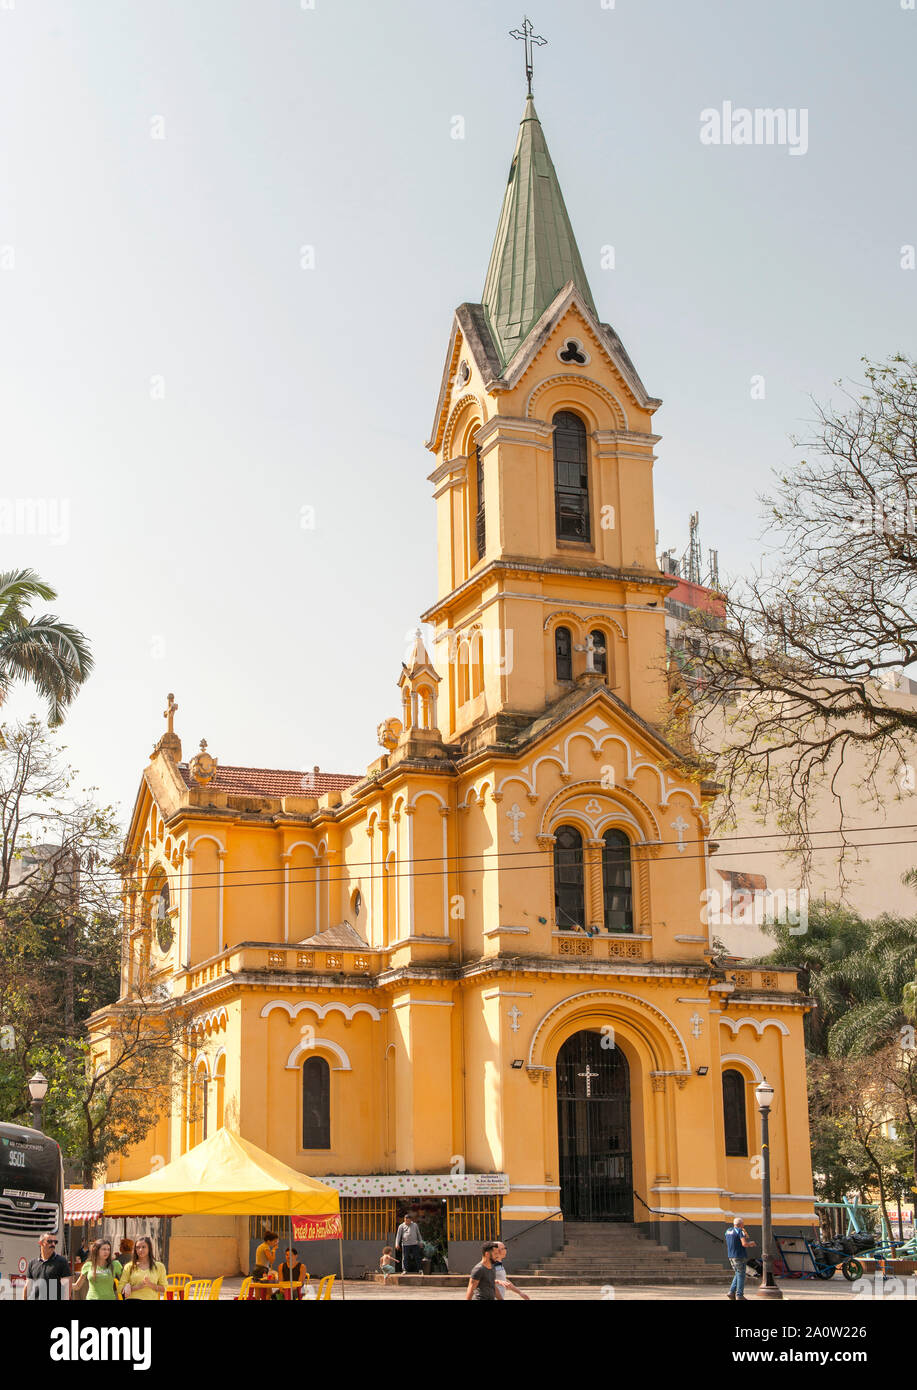 L'église de Notre Dame du Rosaire des hommes noirs à São Paulo, Brésil. Aussi connu comme l'Igreja Nossa Senhora do Rosário dos Homens Pretos. Banque D'Images